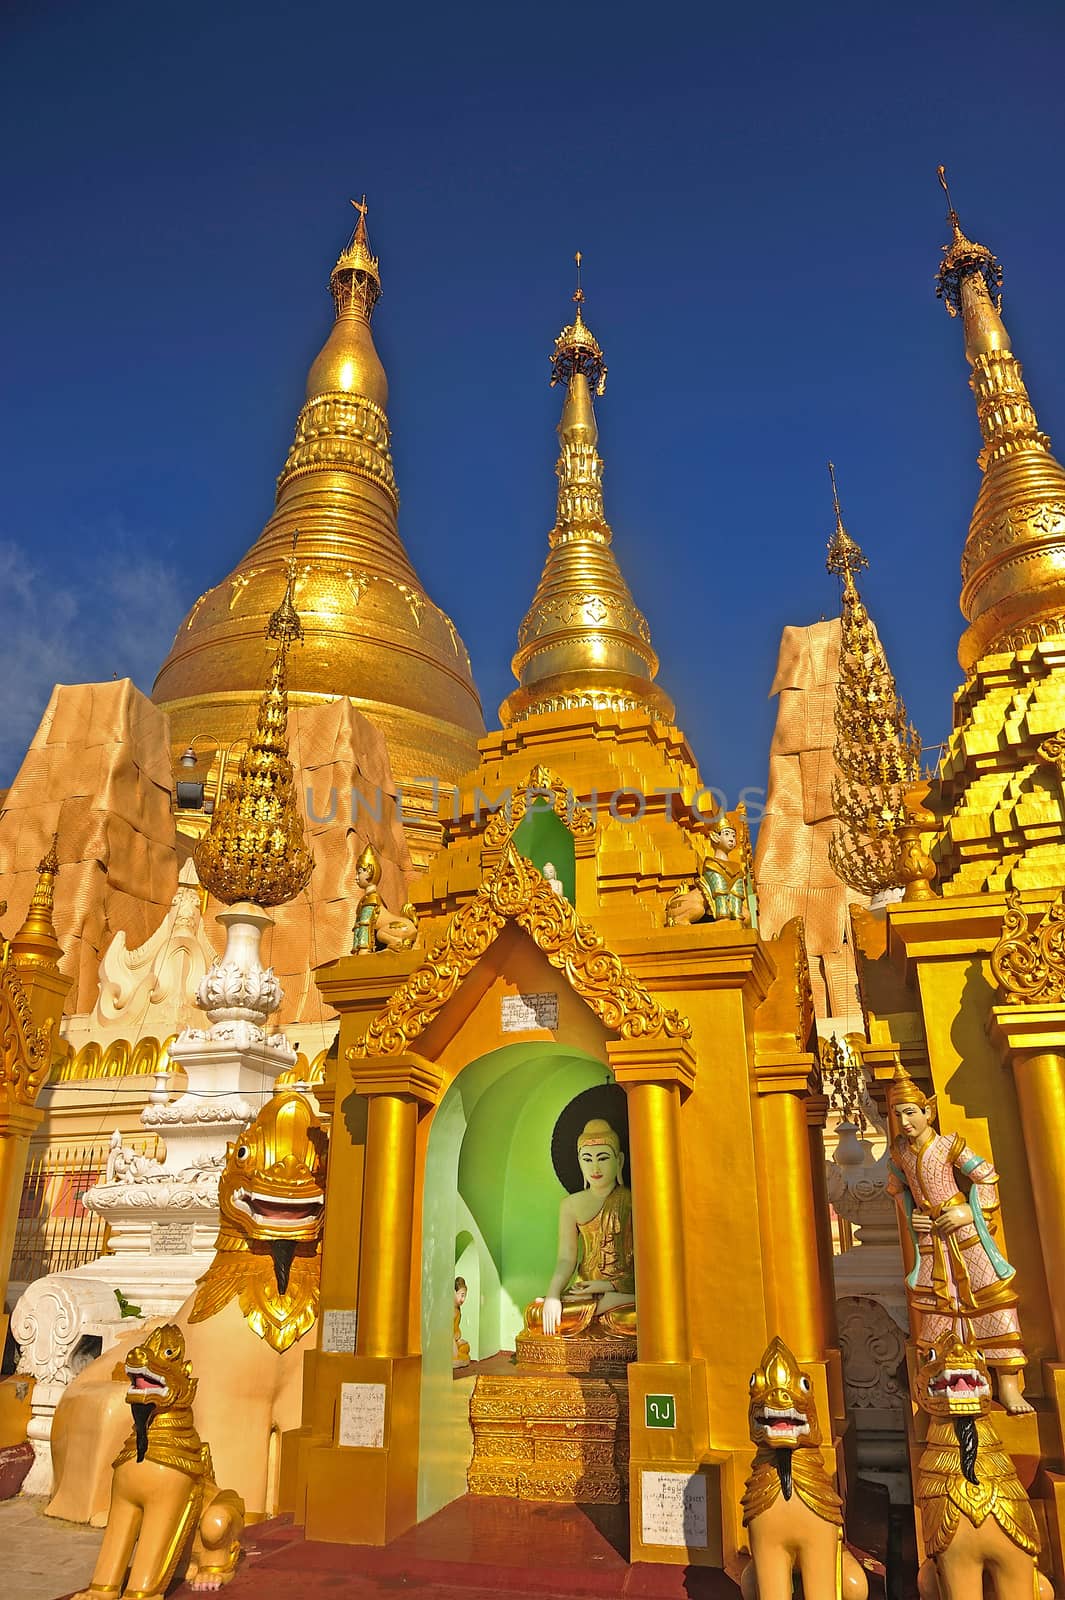 Details of the Shwedagon Paya, in Yangon, Myanmar (or Burma) by think4photop